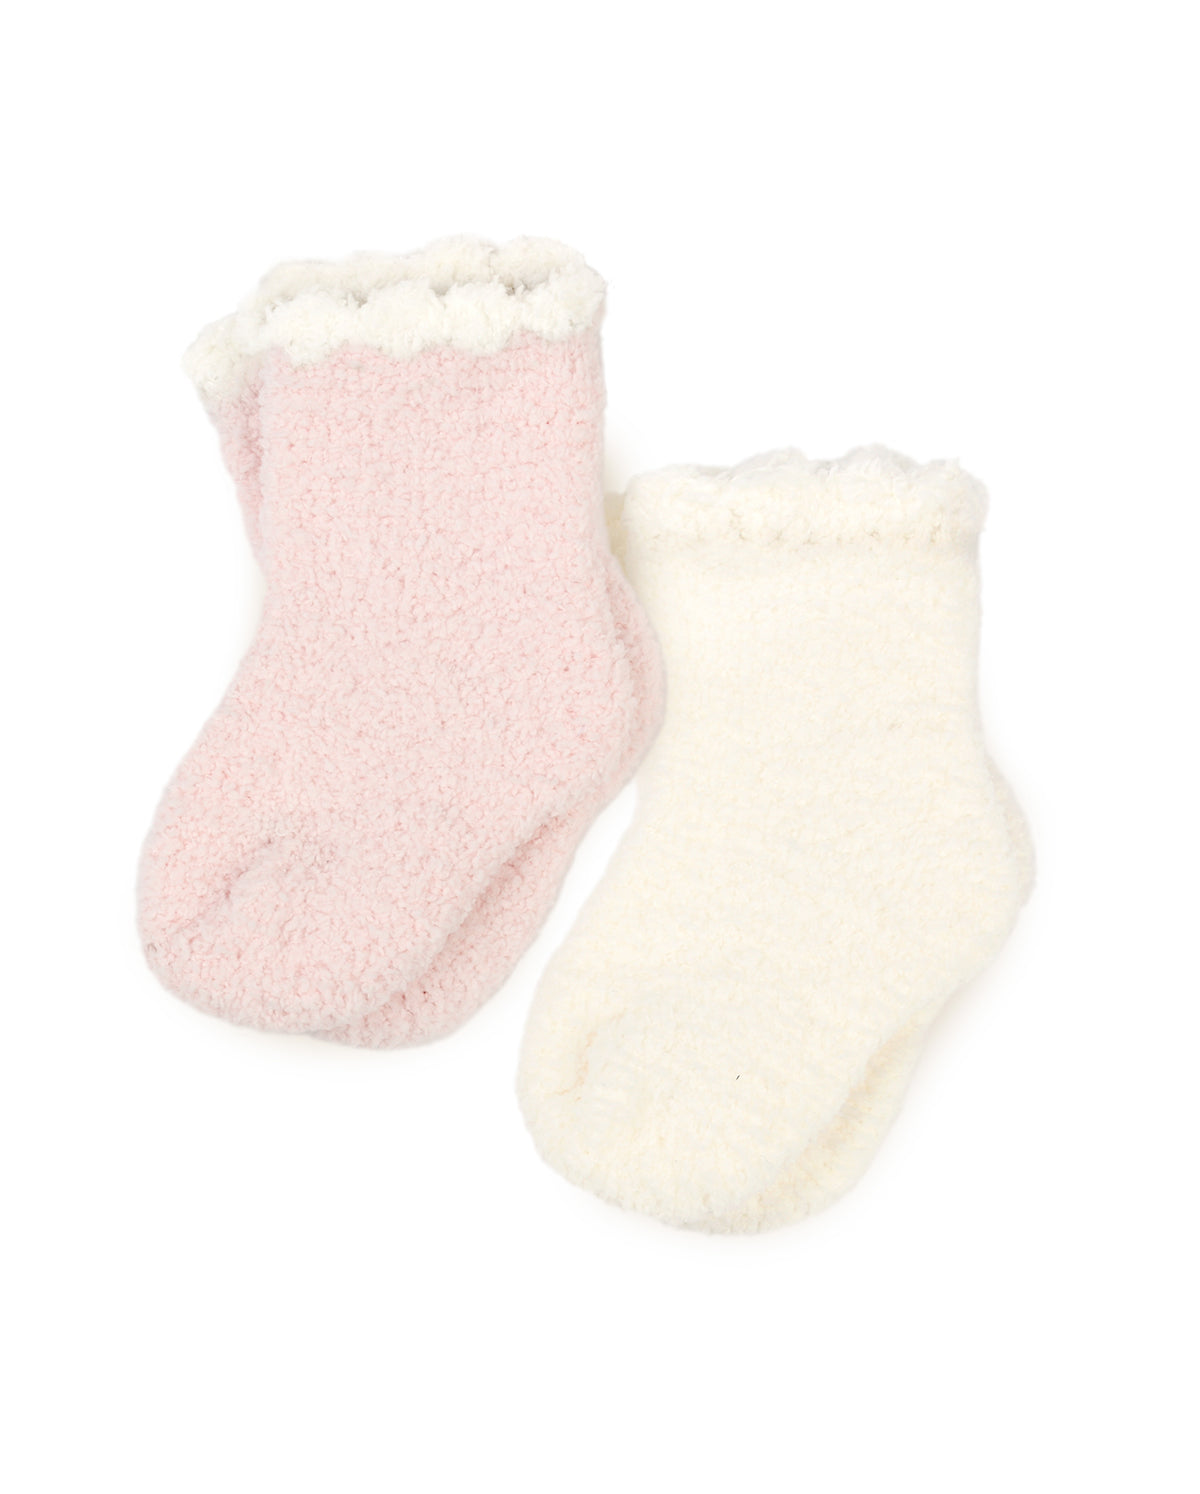 Baby Socks Set W/ Trim